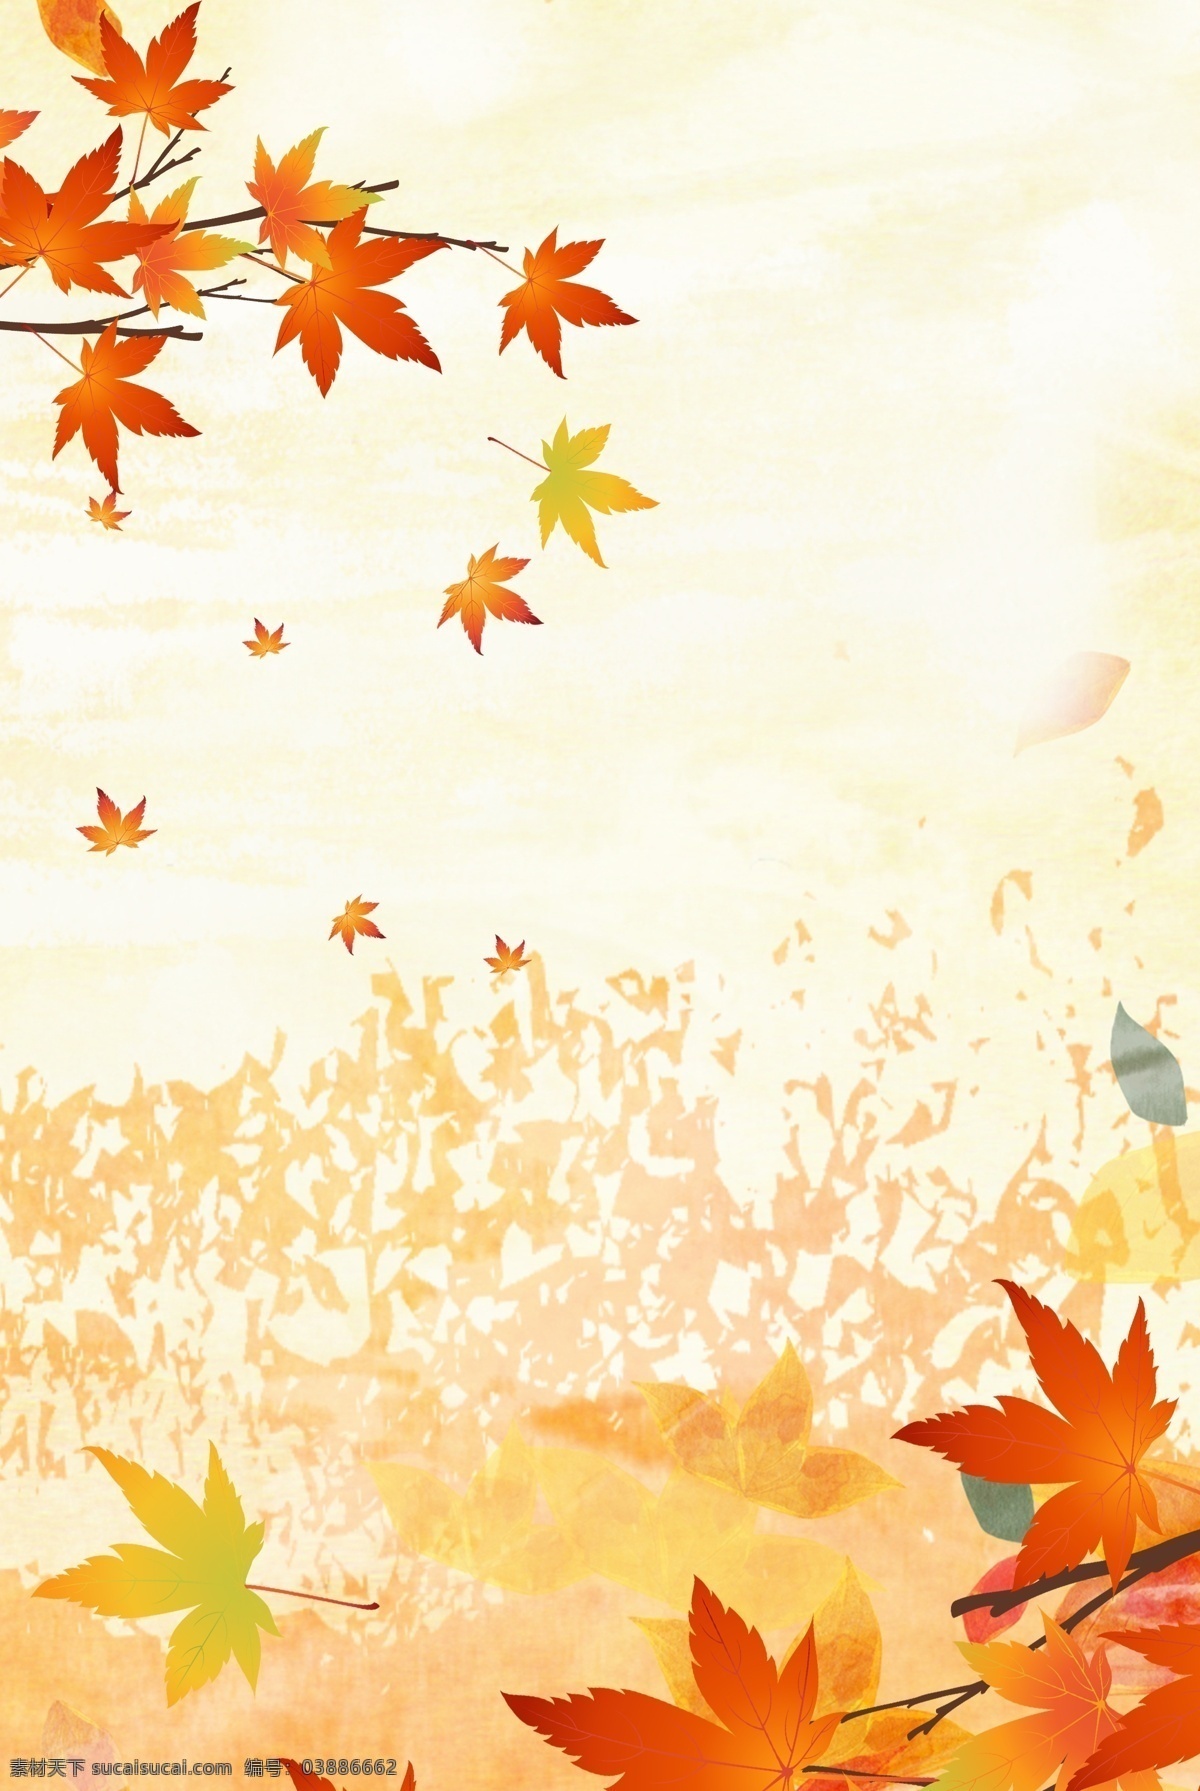 立秋 枫叶 背景 模板 秋分 24节气 二十四节气 海报 秋季 秋天 促销 水彩 手绘 落叶背景 枫叶背景